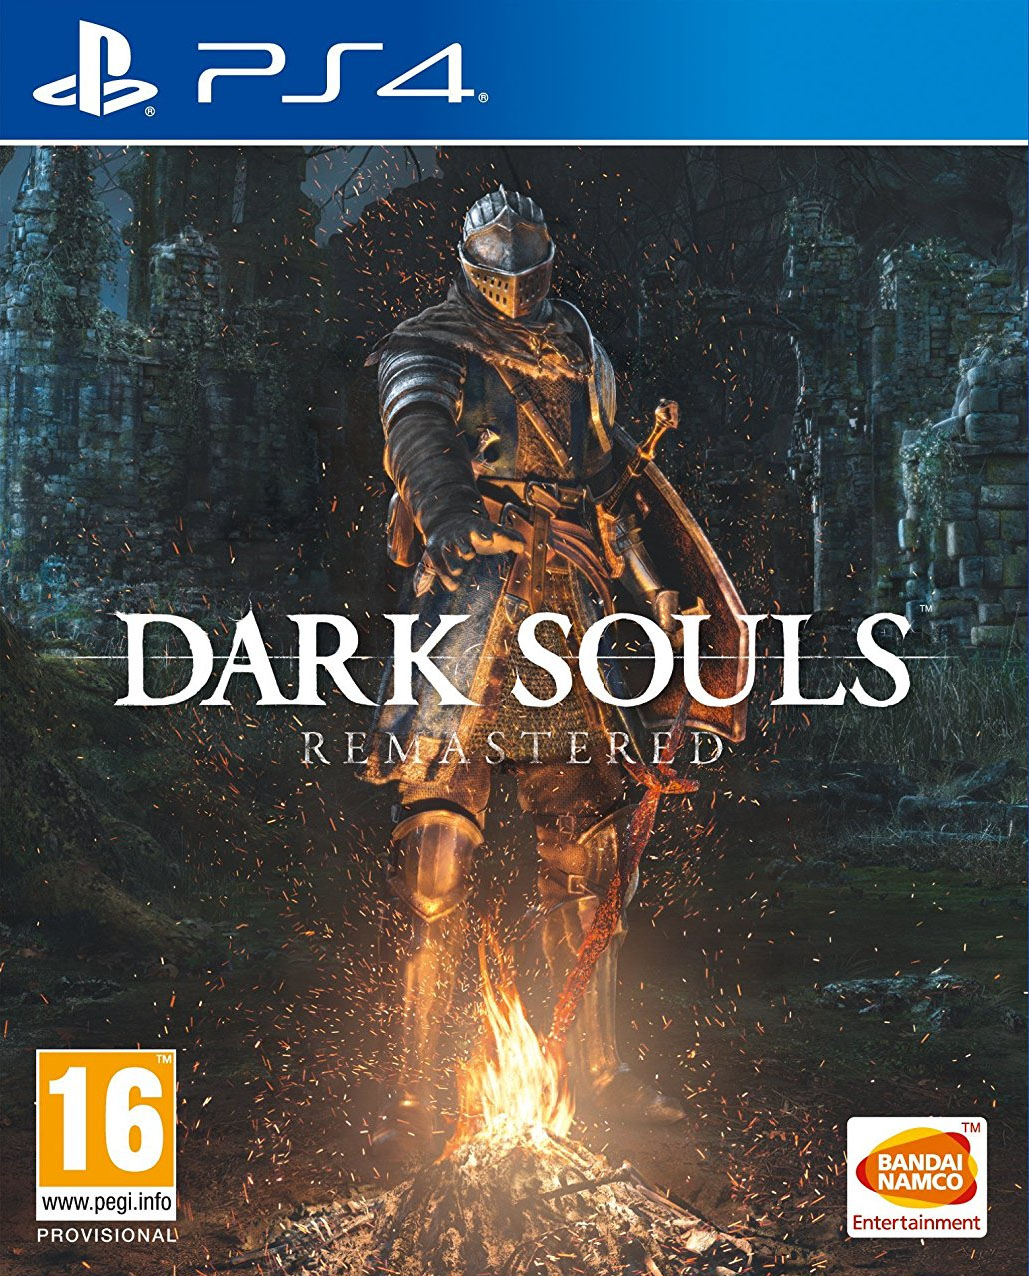 Dark Souls Remastered Data De Lançamento Trailer Gameplay Review